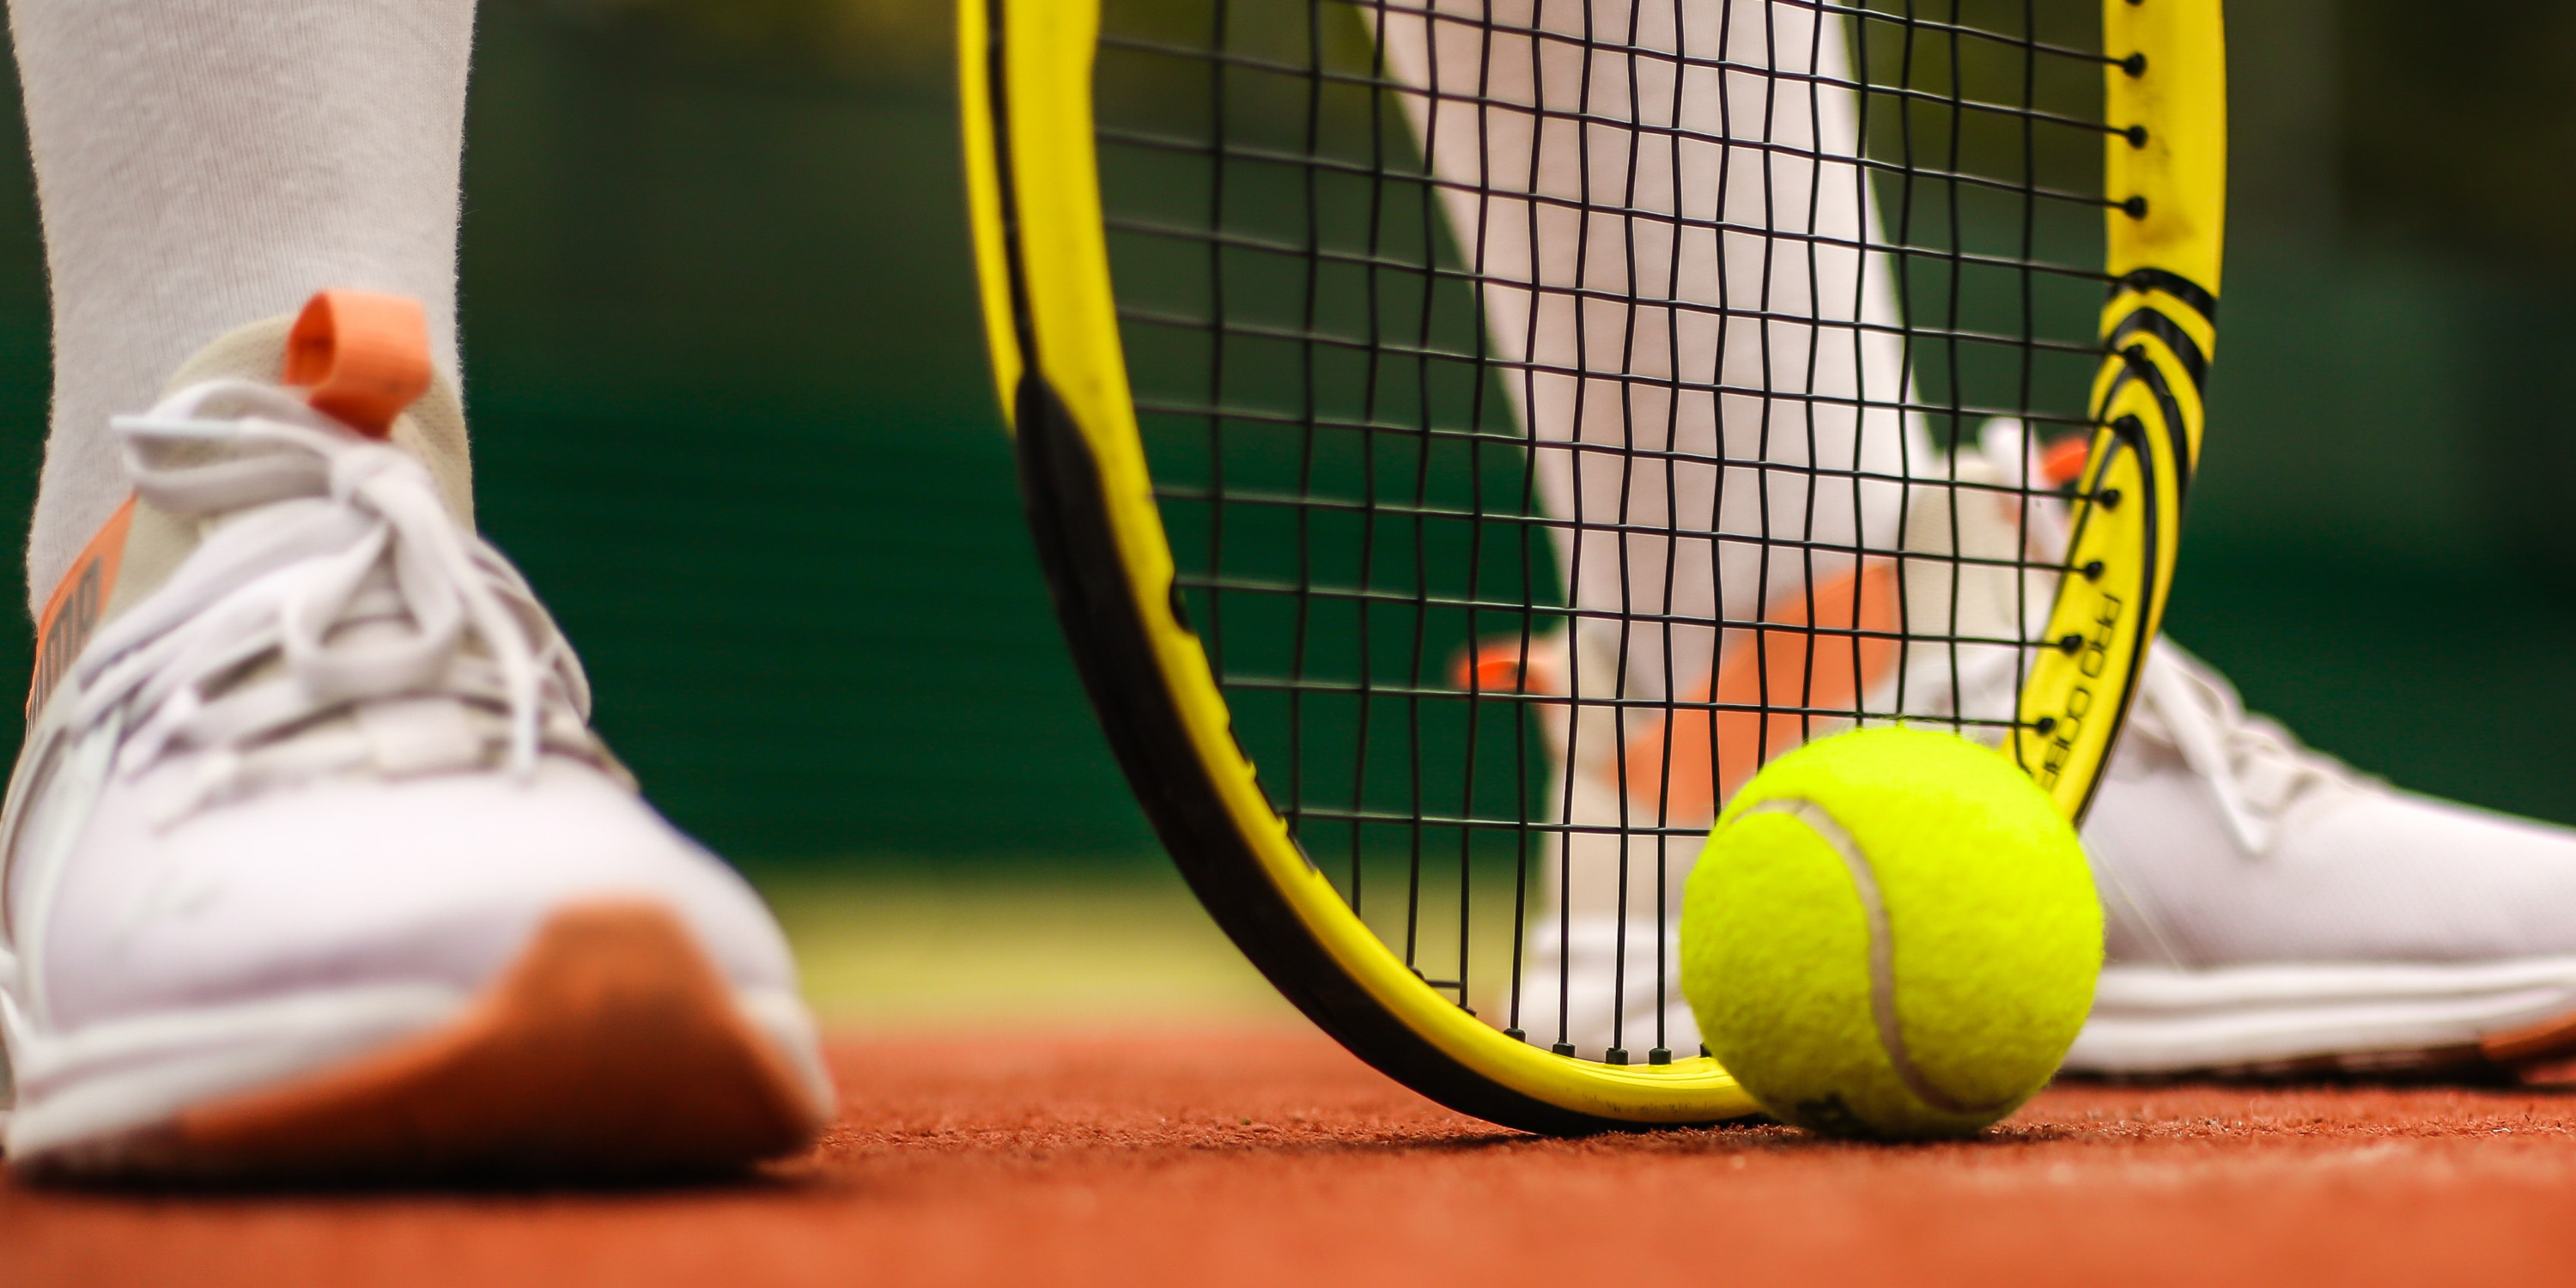 Рейтинги WTA та ATP: які позиції посідають українські тенісисти